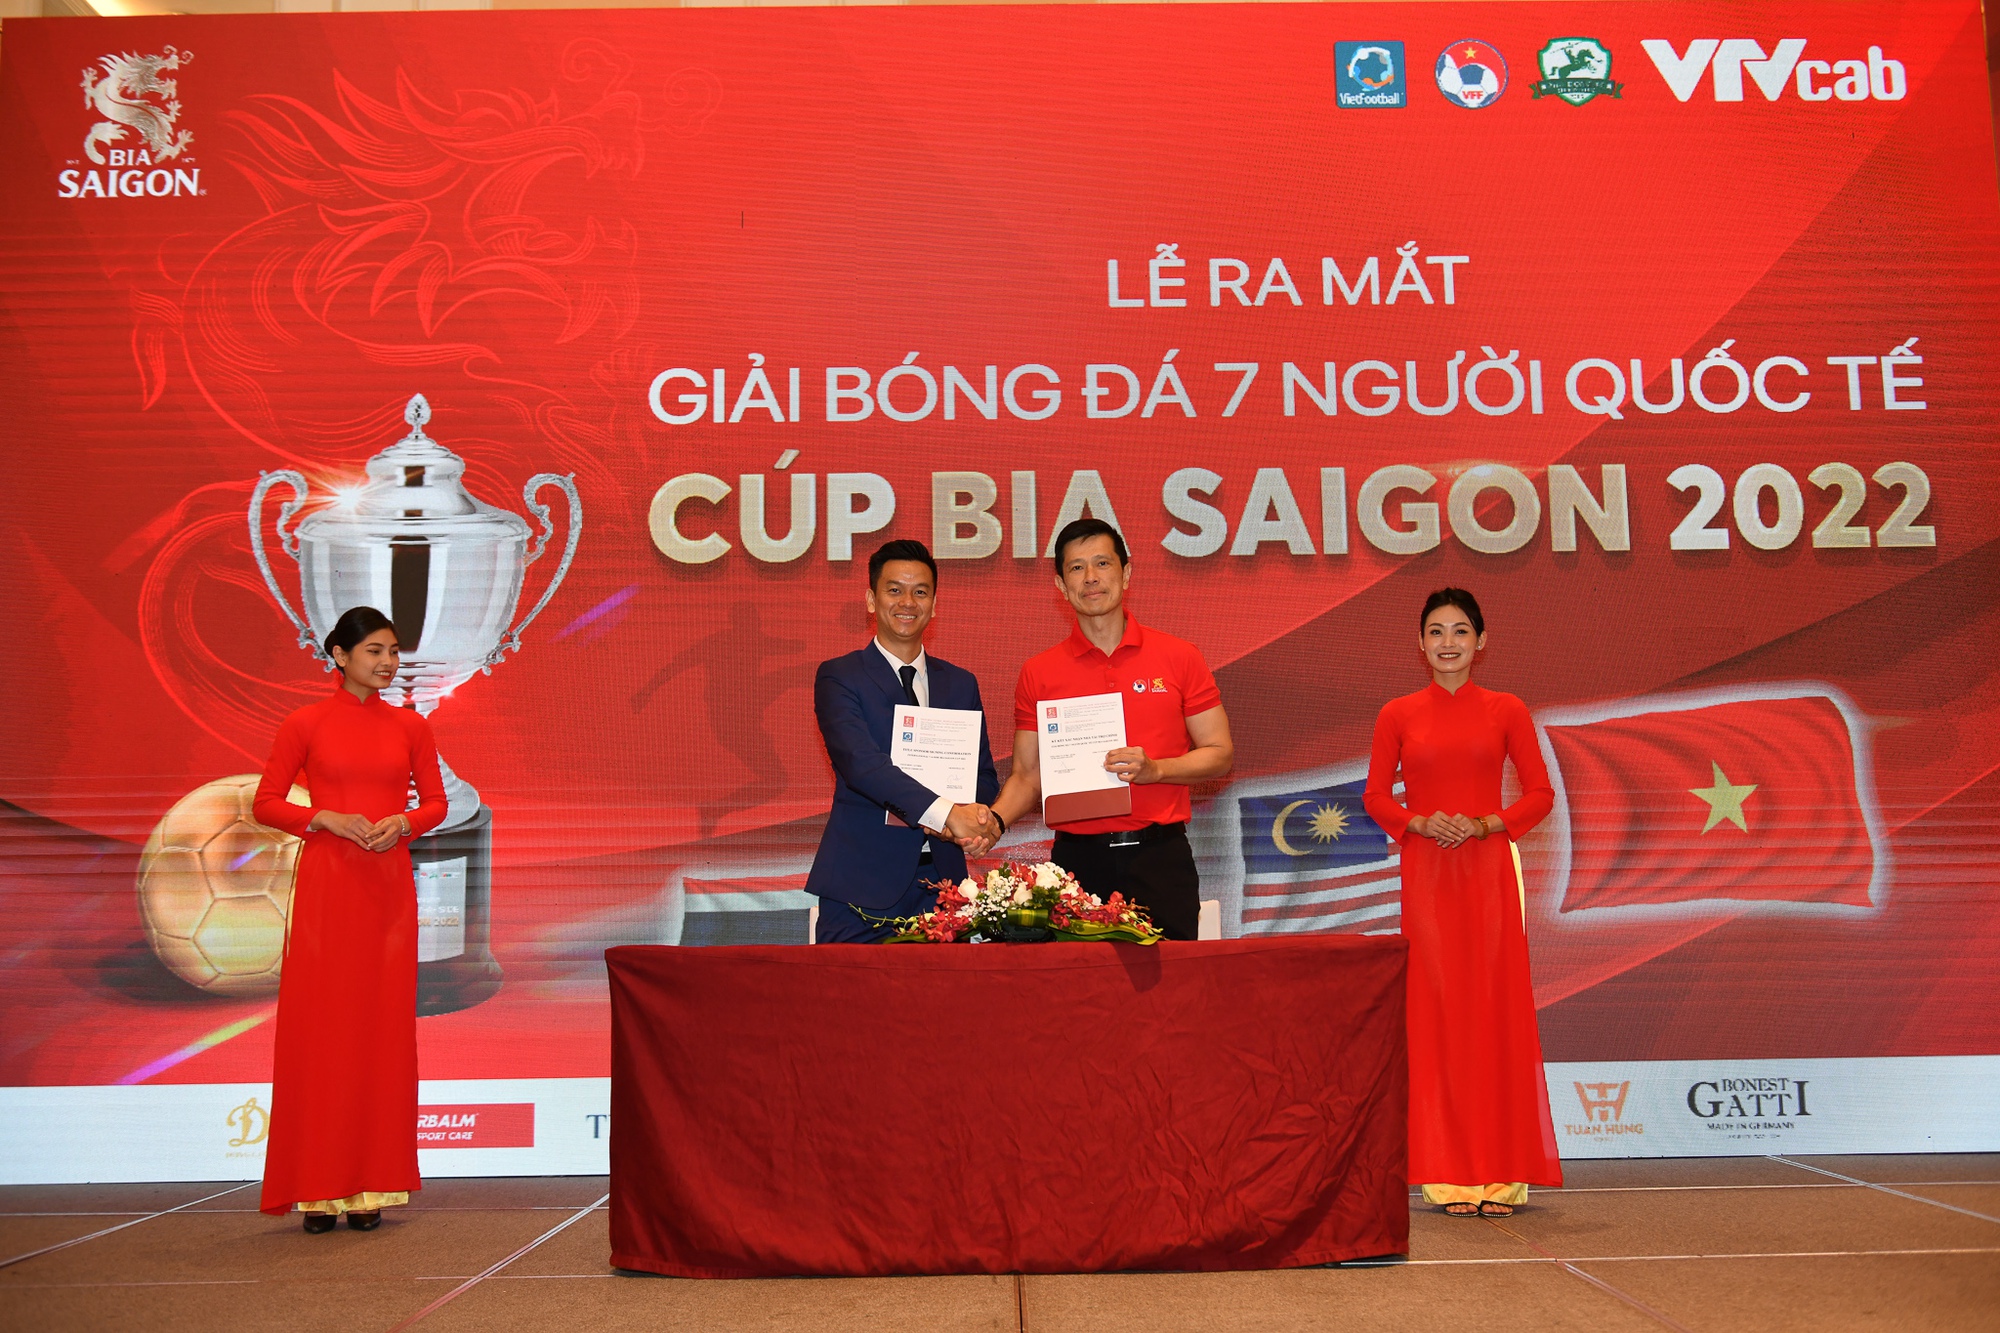 Việt Nam lần đầu tổ chức giải bóng đá 7 người quốc tế - Ảnh 1.